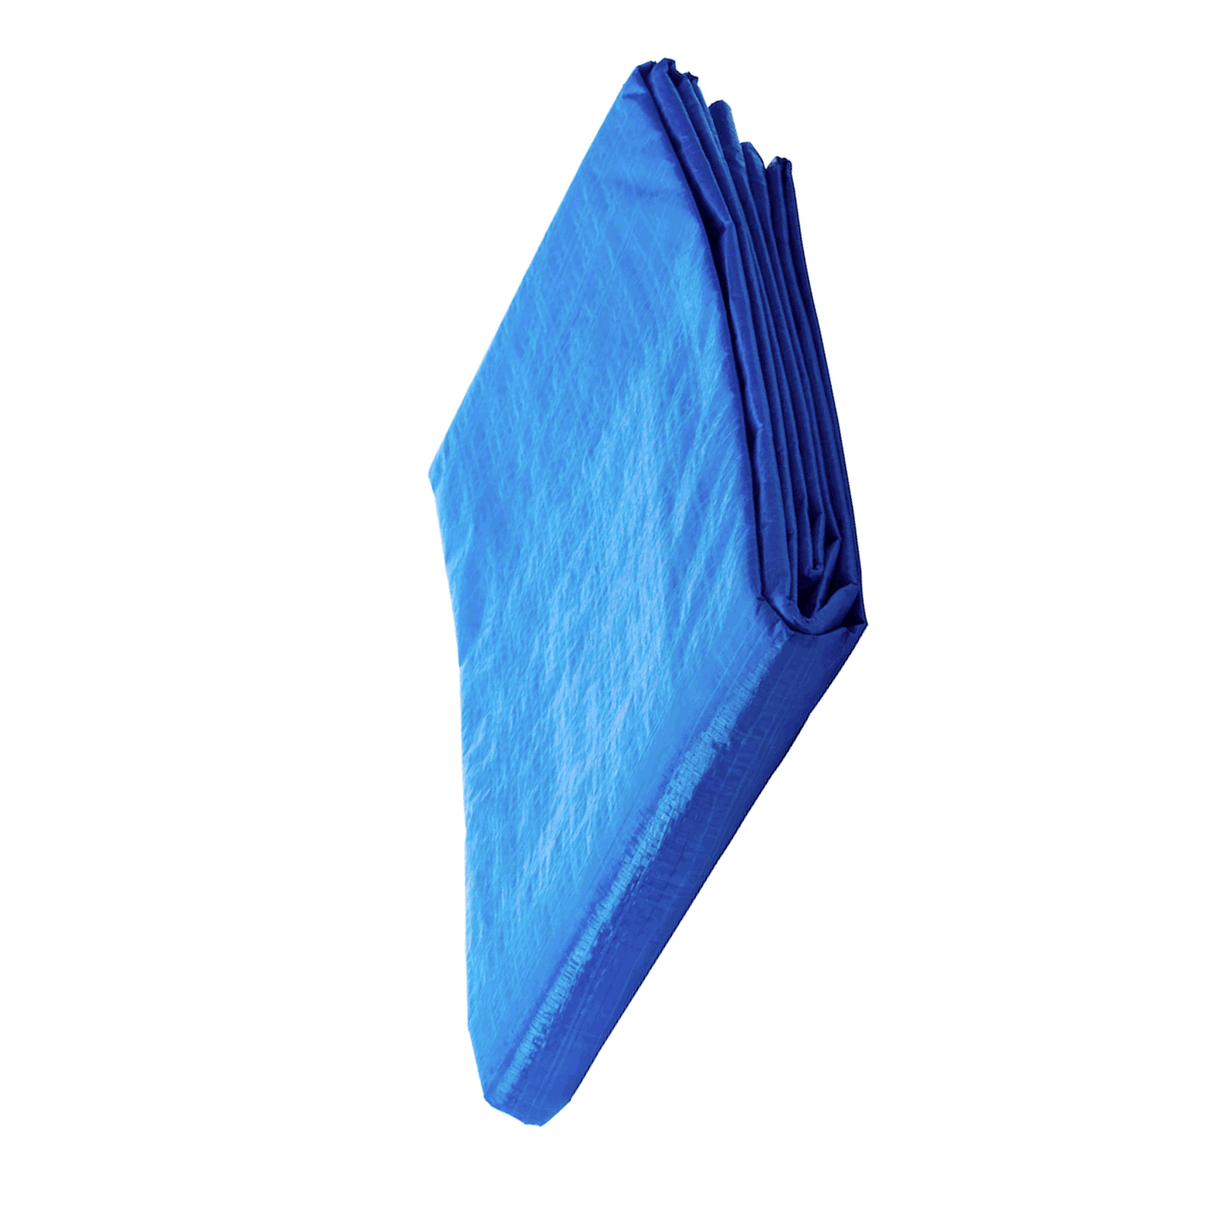 Lona Plástico High Power T1620-k azul 4.87 x 6.09 Mts